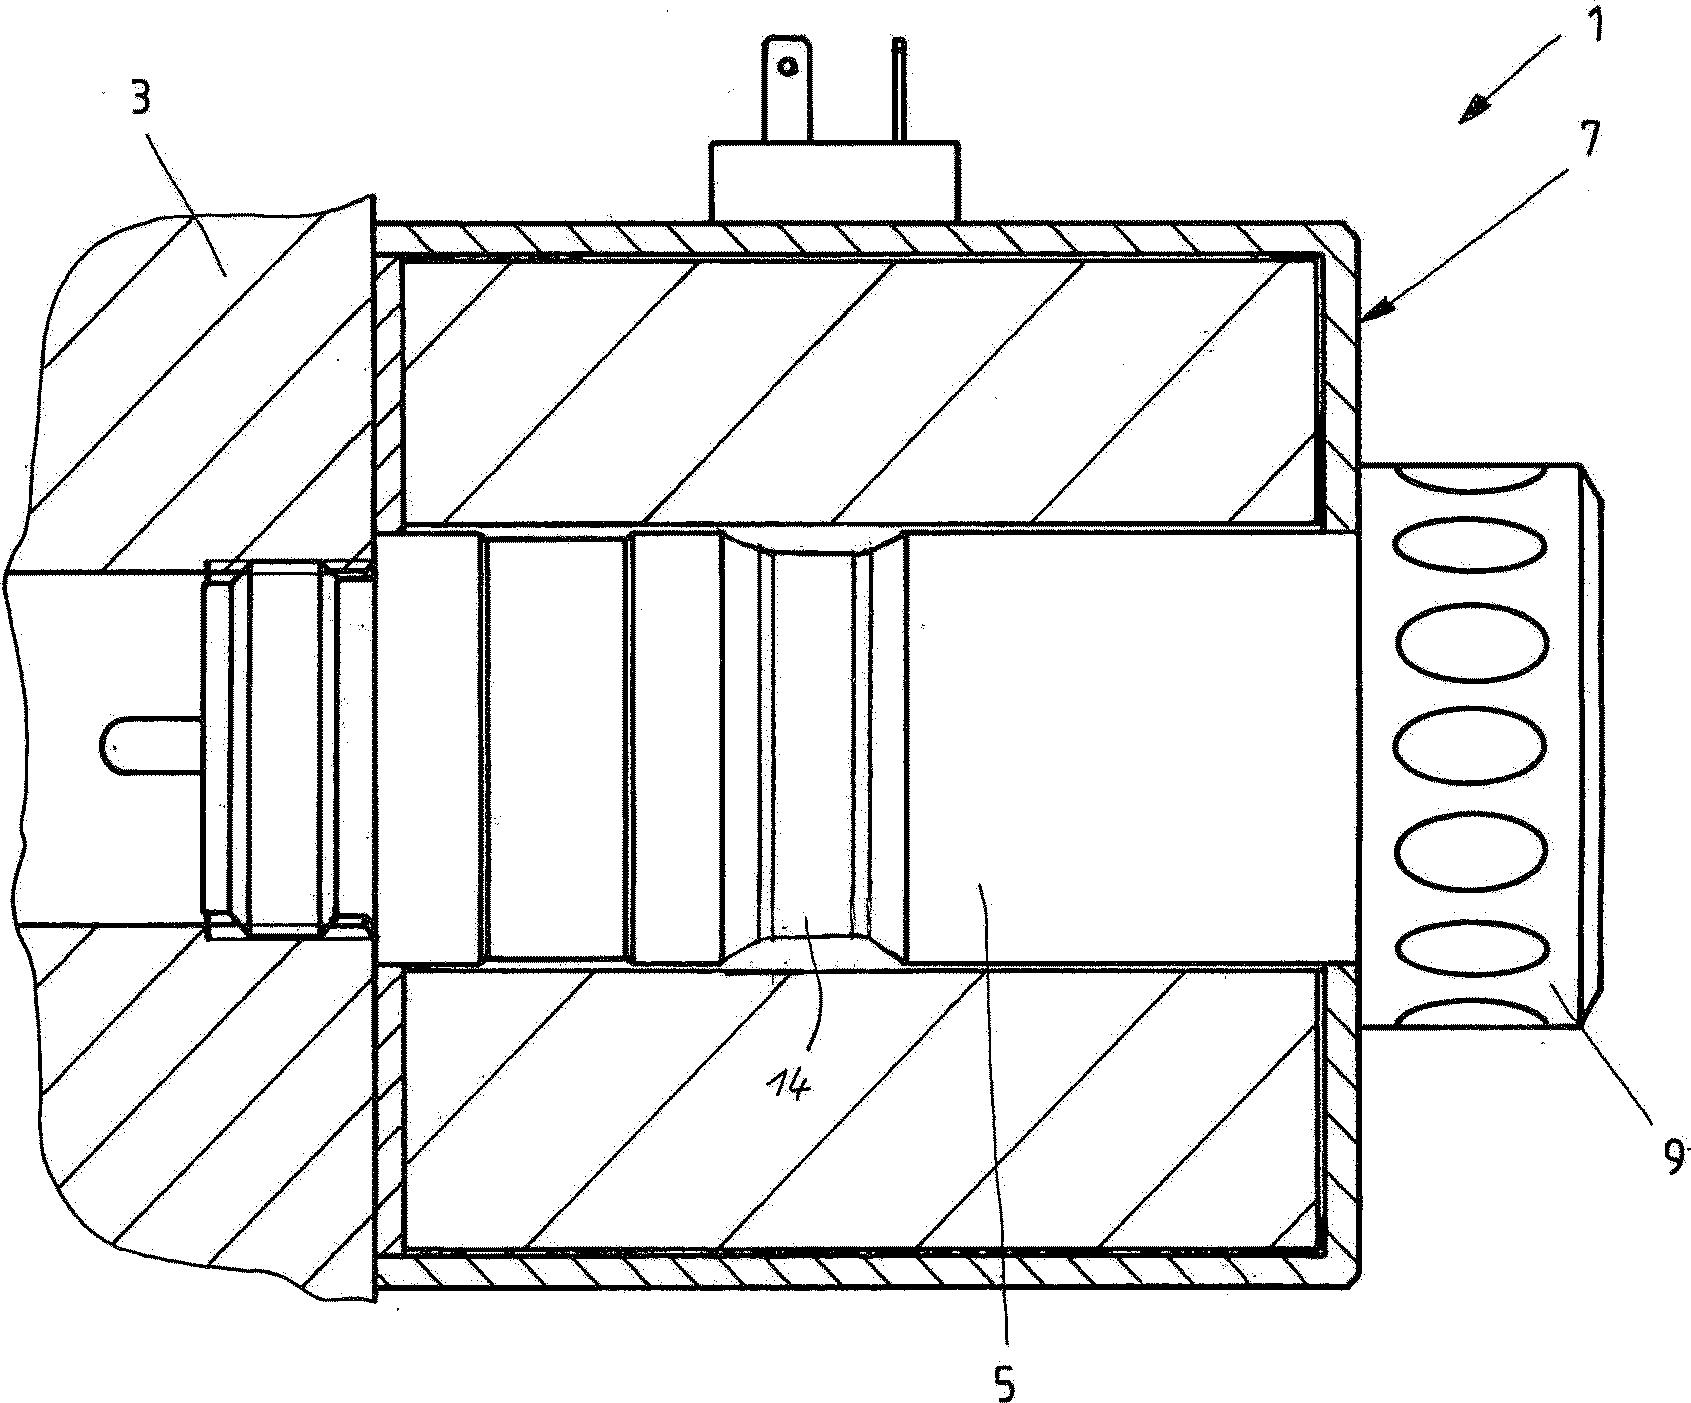 Solenoid arrangement and valve arrangement